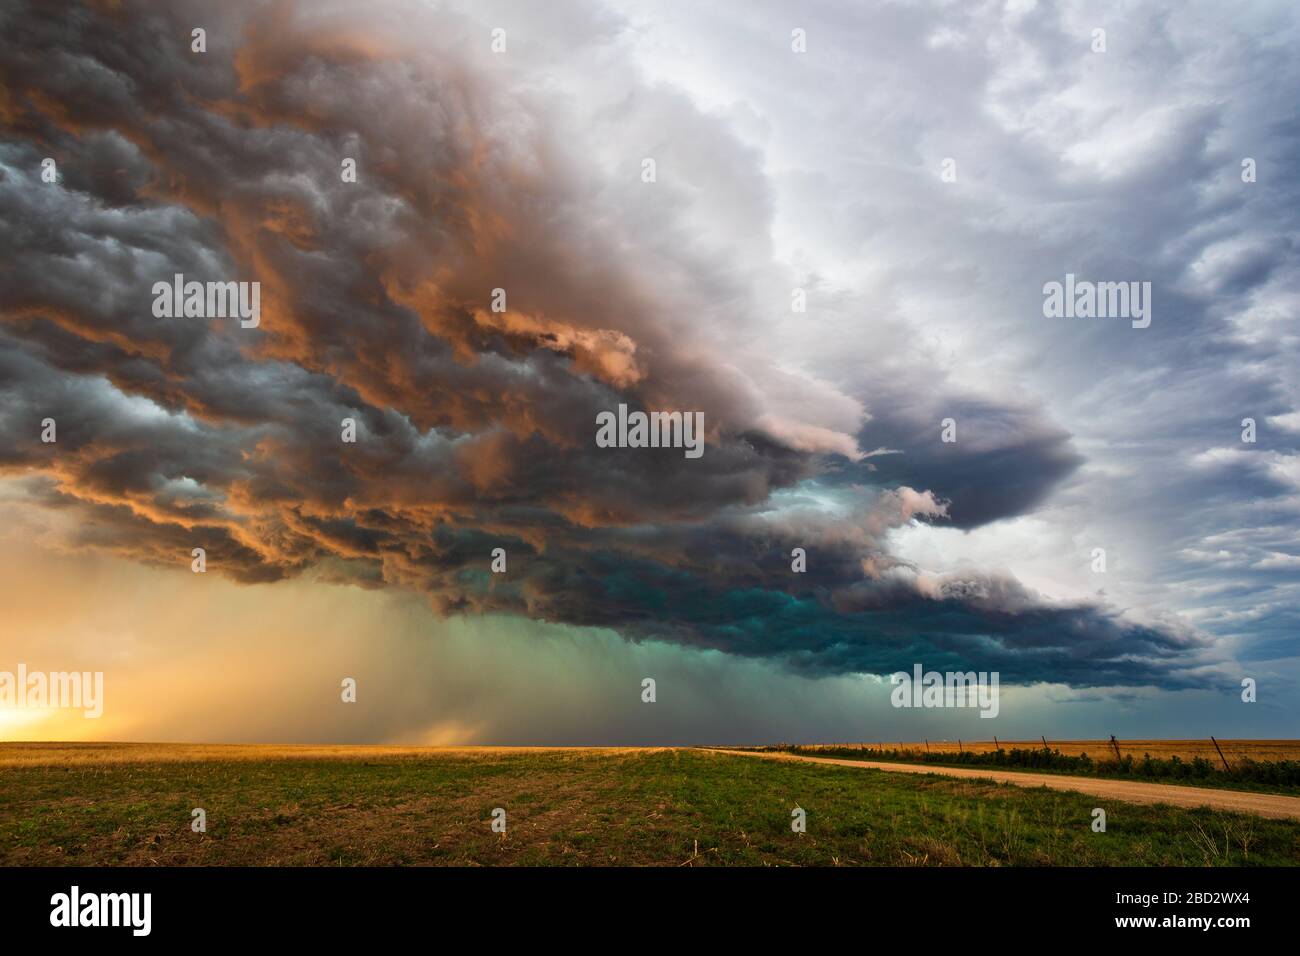 La lumière du soleil illumine des nuages de tempête sombres et spectaculaires sur un champ au coucher du soleil alors qu'une tempête de grêle approche d'EADS, Colorado Banque D'Images